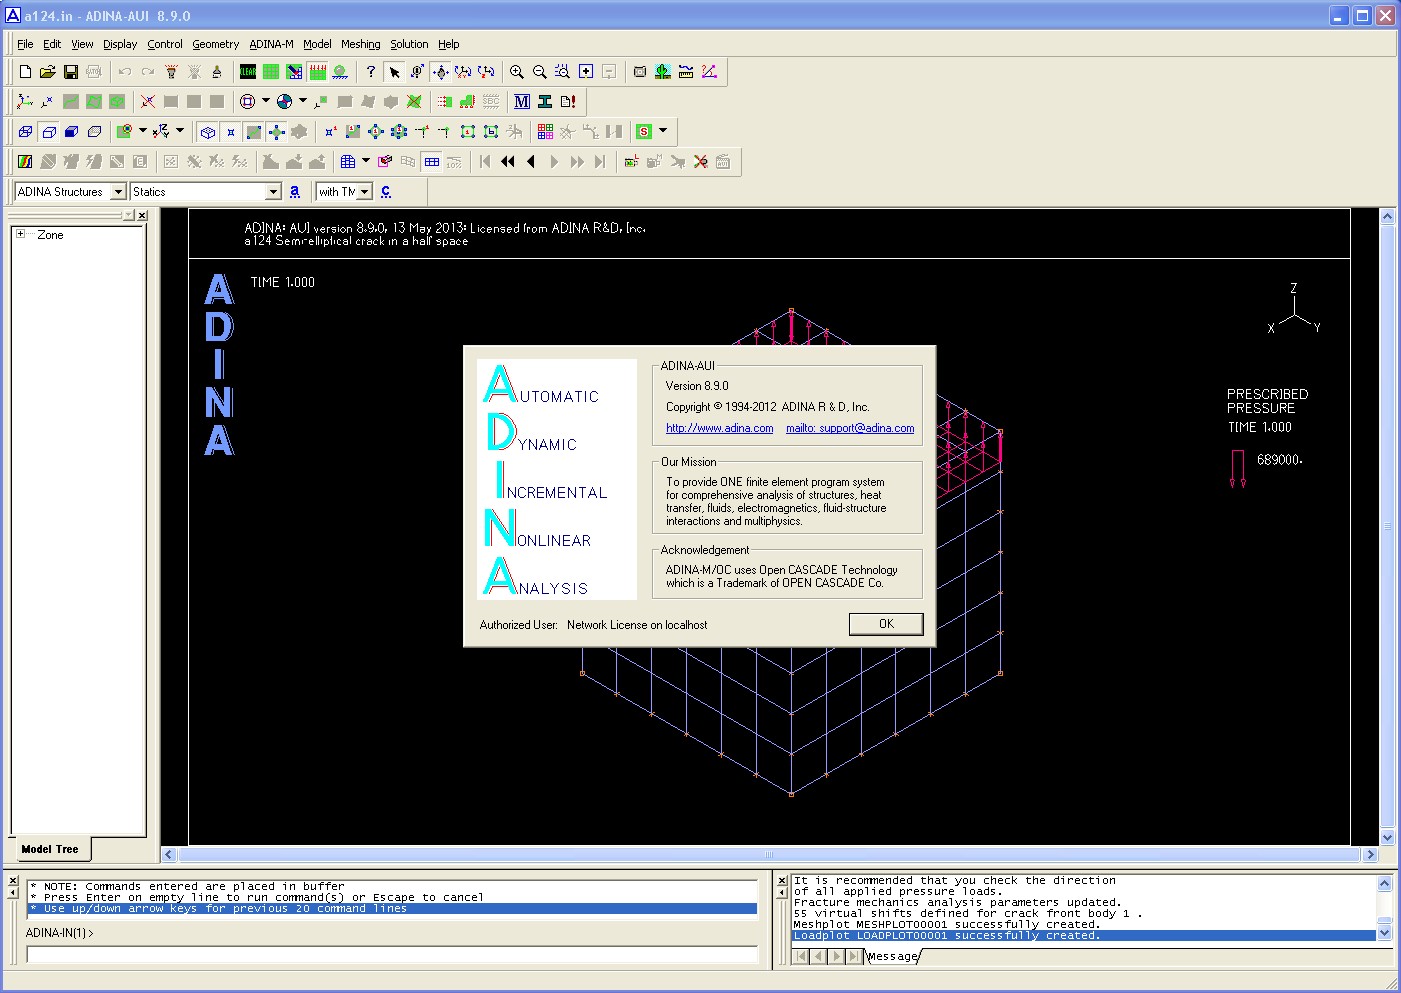 Working with ADINA System 8.9.0 Win x86+x64